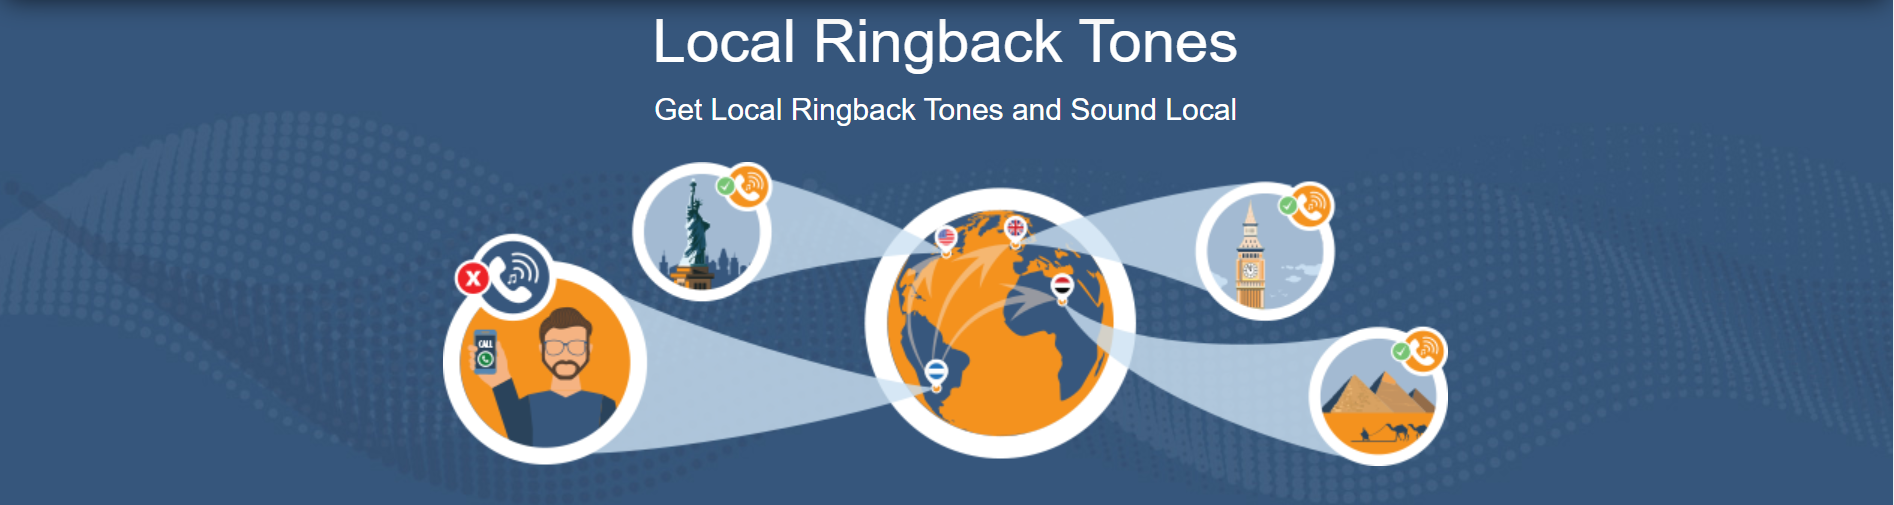 Local Ringback Tones